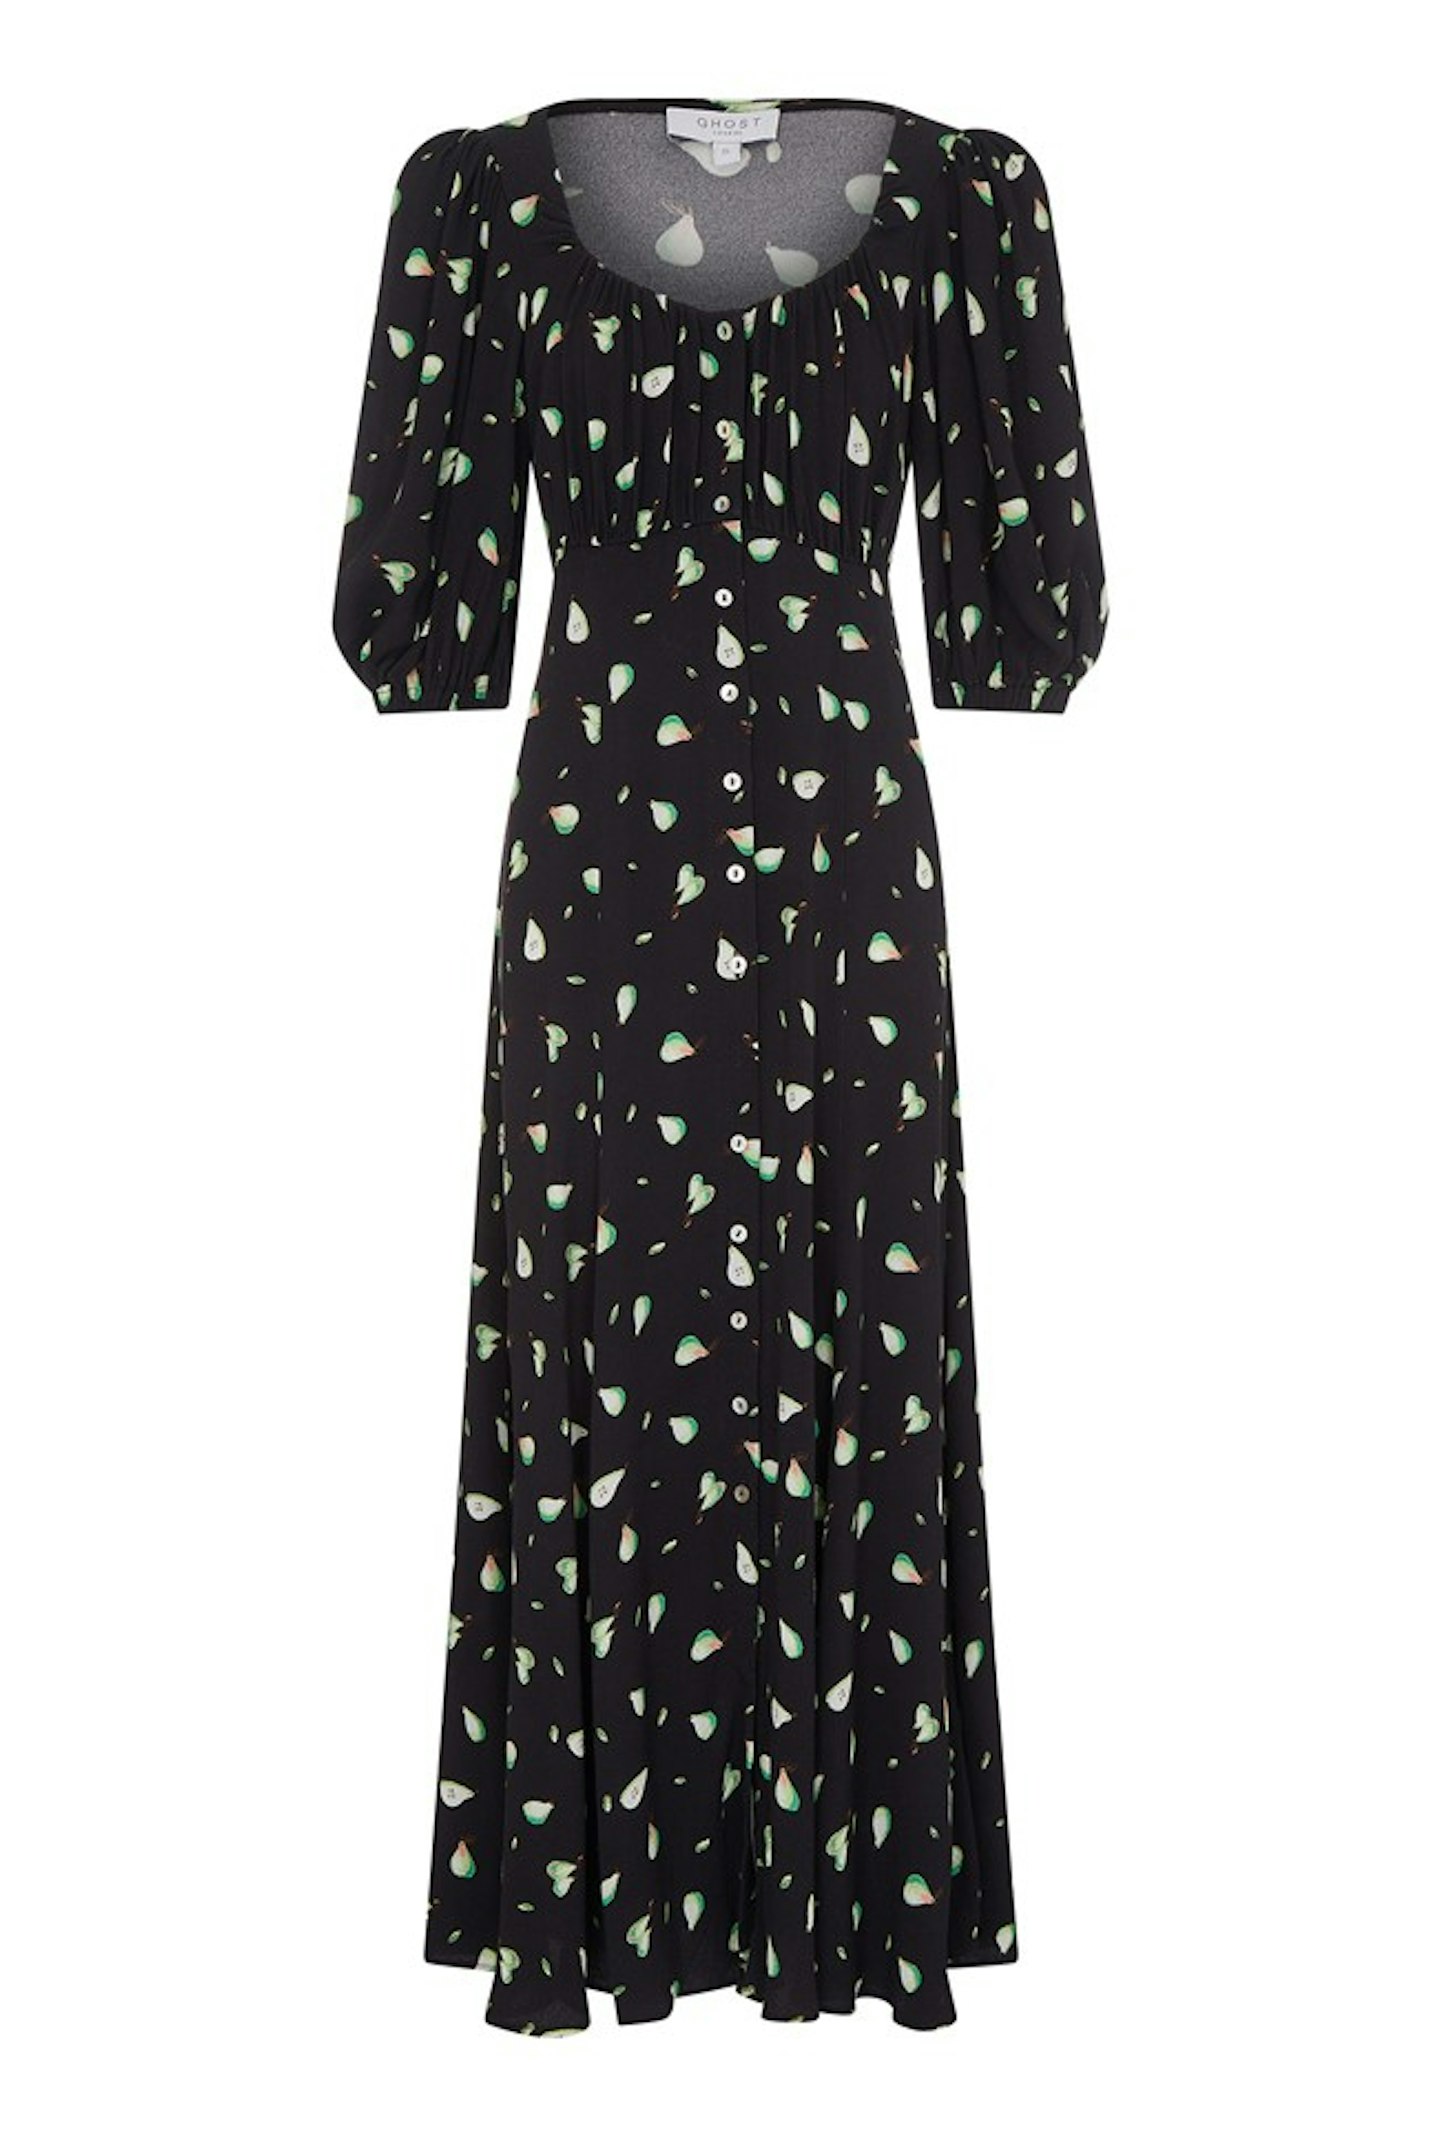 Ghost, Pear Print Midi Dress, £120